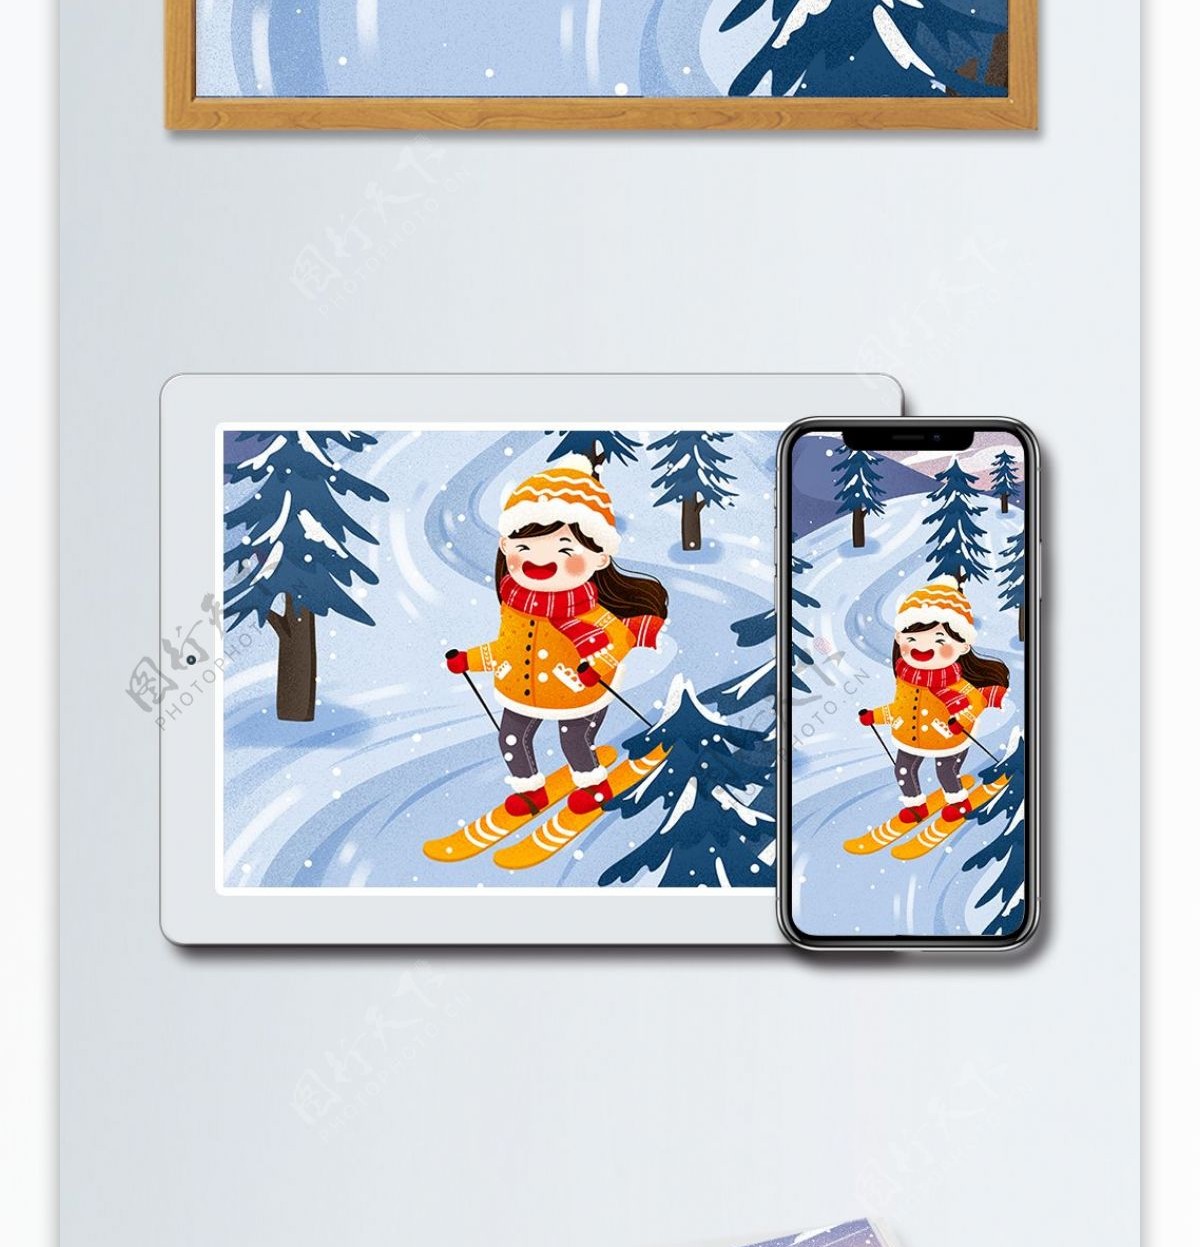 冬季滑雪女孩雪中滑雪冬天雪景插画